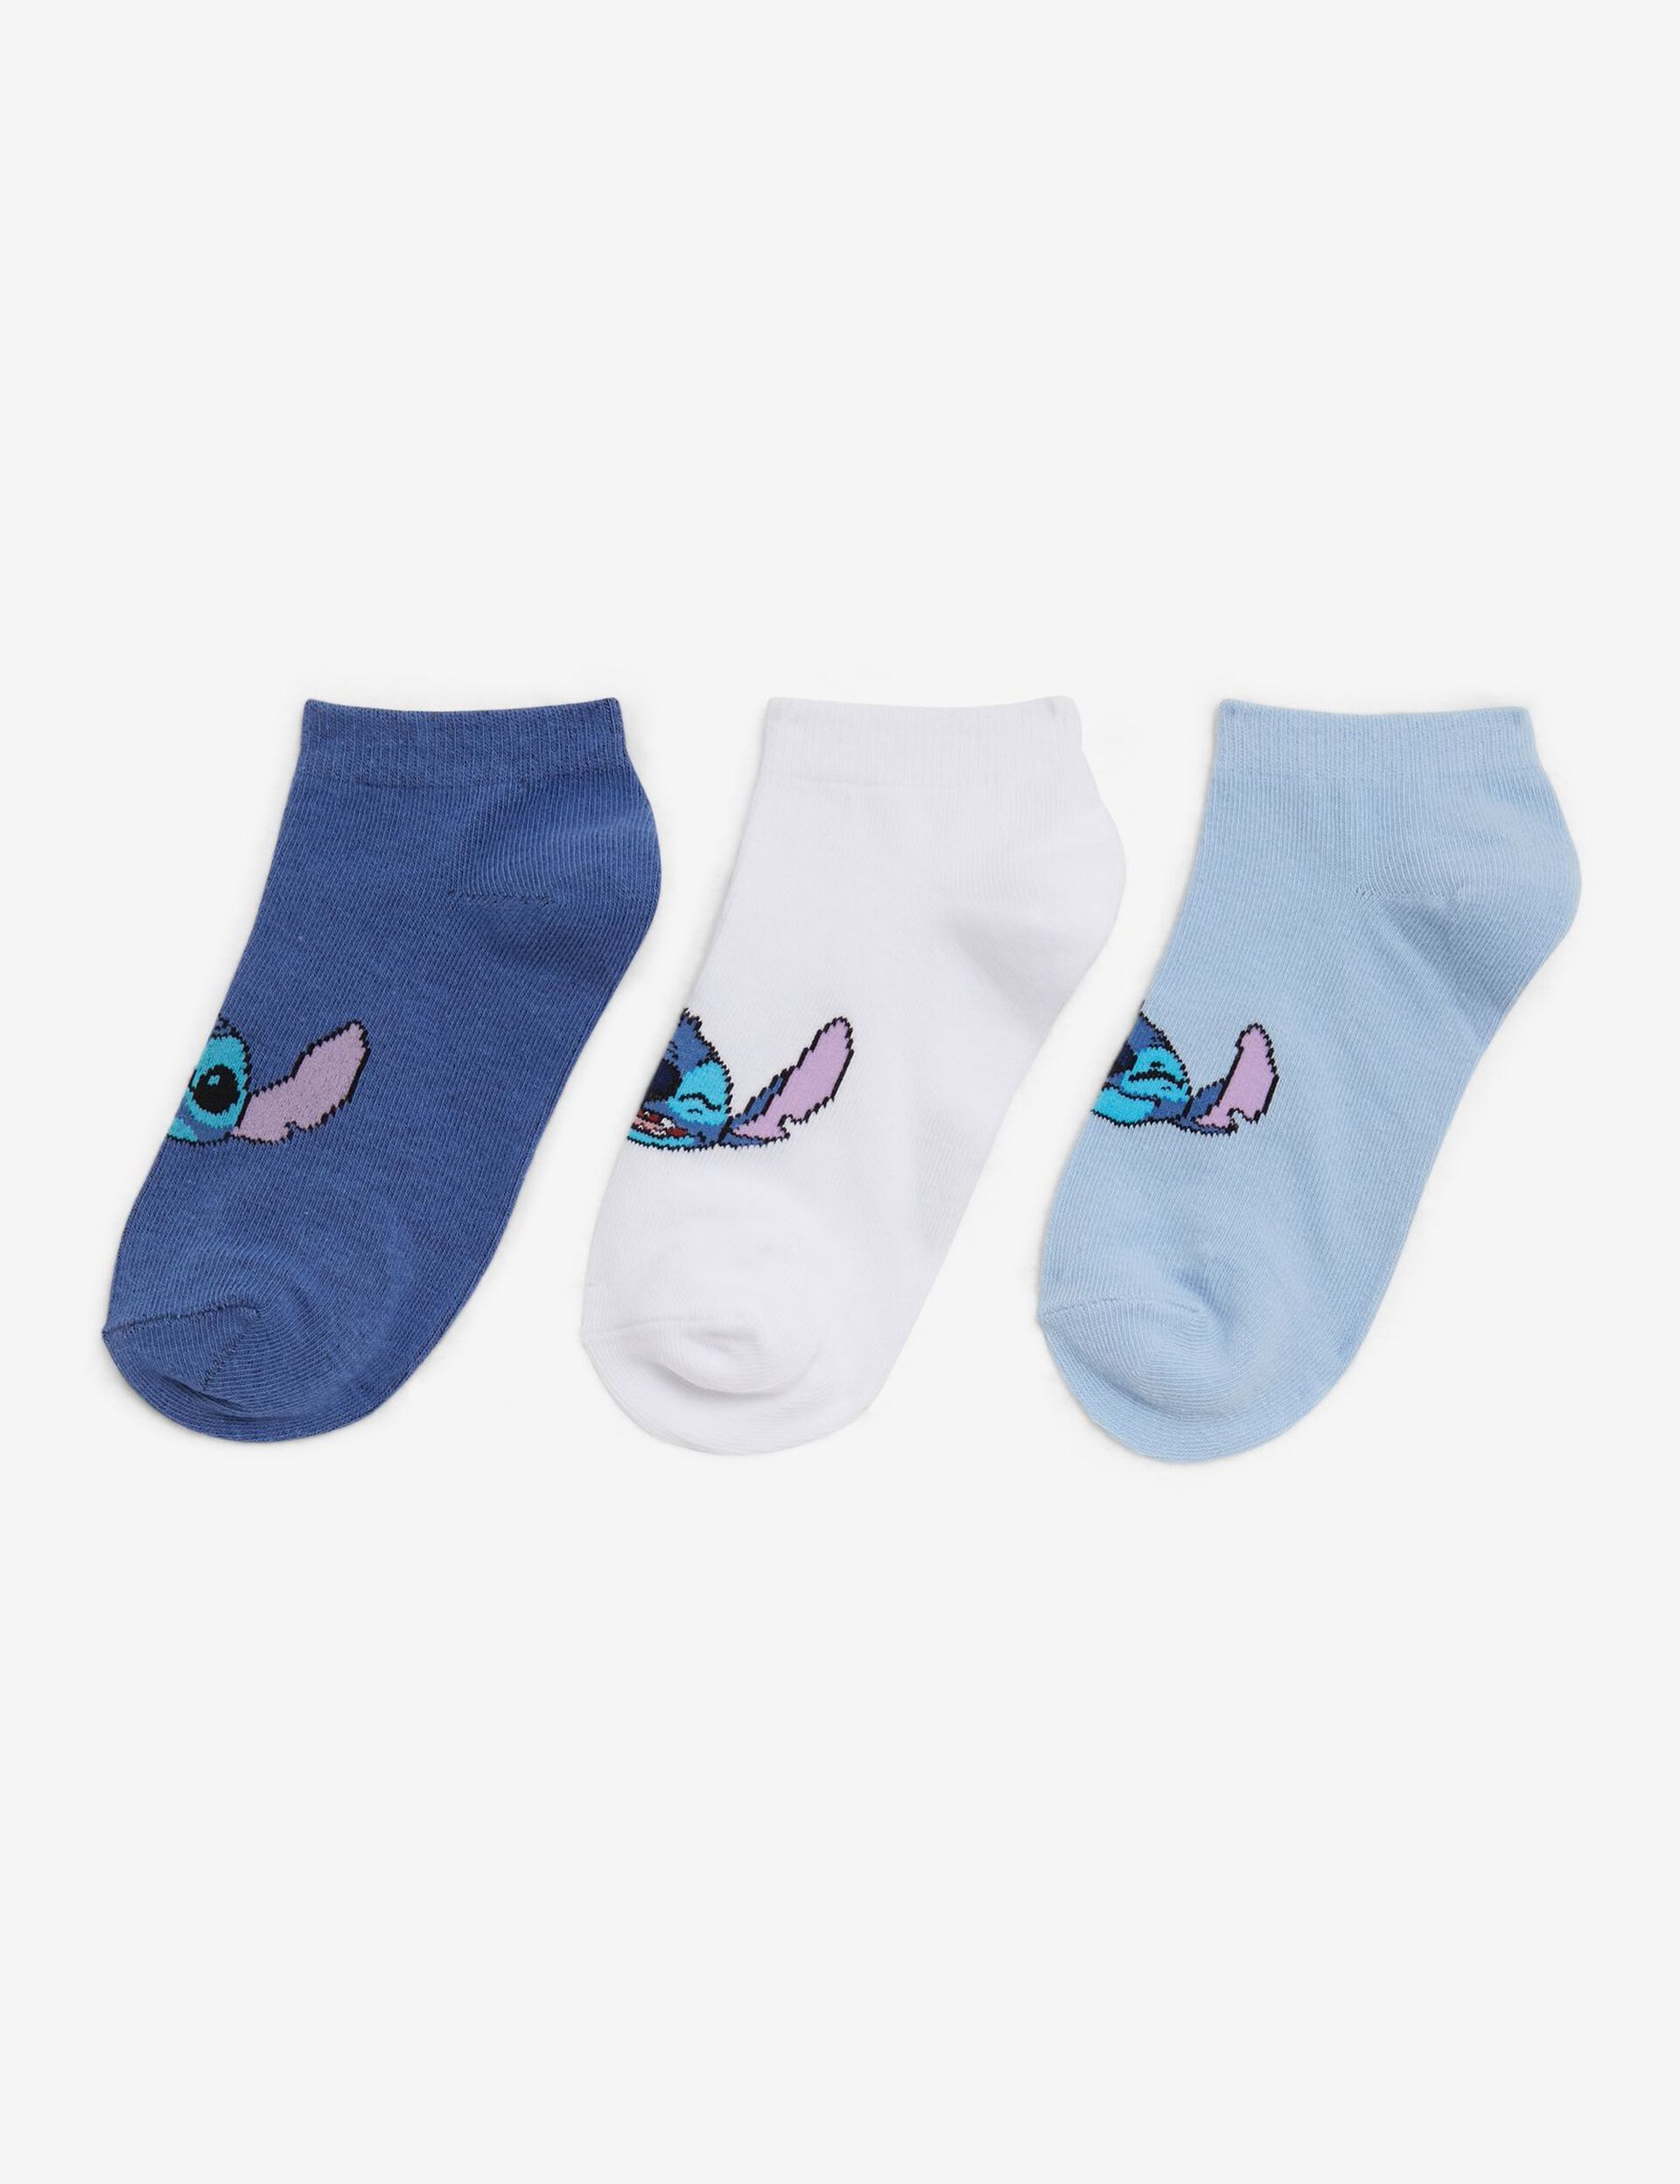 Chaussettes Disney Stitch bleues et blanches Ado / Fille / Femme • Jennyfer